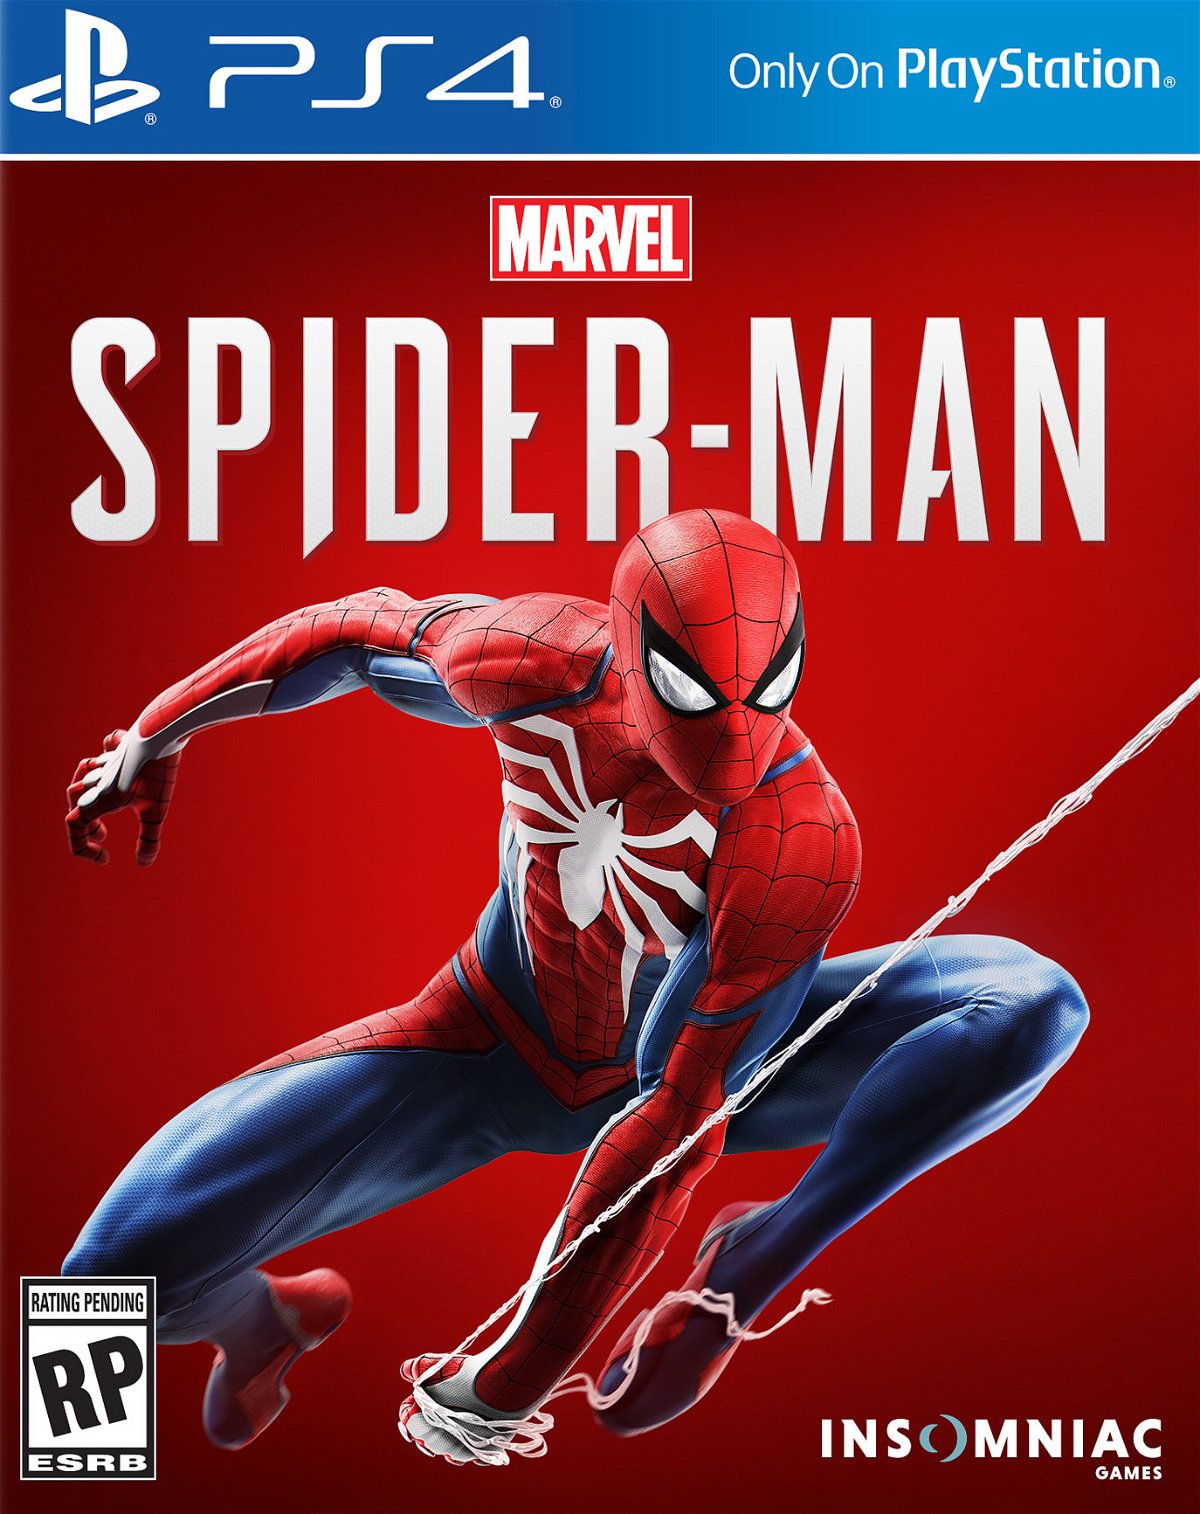 Spider-Man uscirà a settembre solo su PlayStation 4